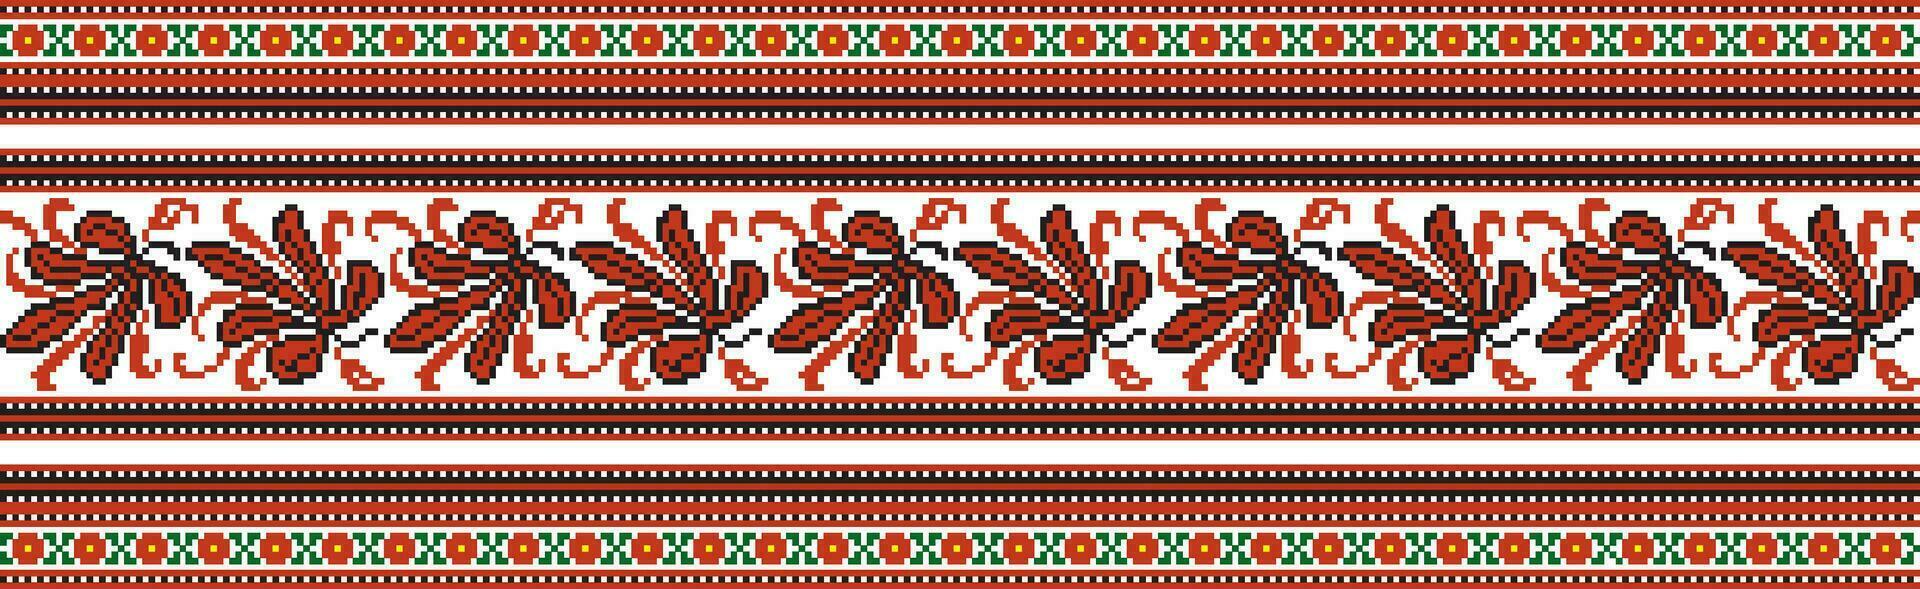 Vektor farbig nahtlos ukrainisch National Ornament, Stickerei. endlos ethnisch Blumen- Grenze, slawisch Völker rahmen. rot Kreuz Stich.